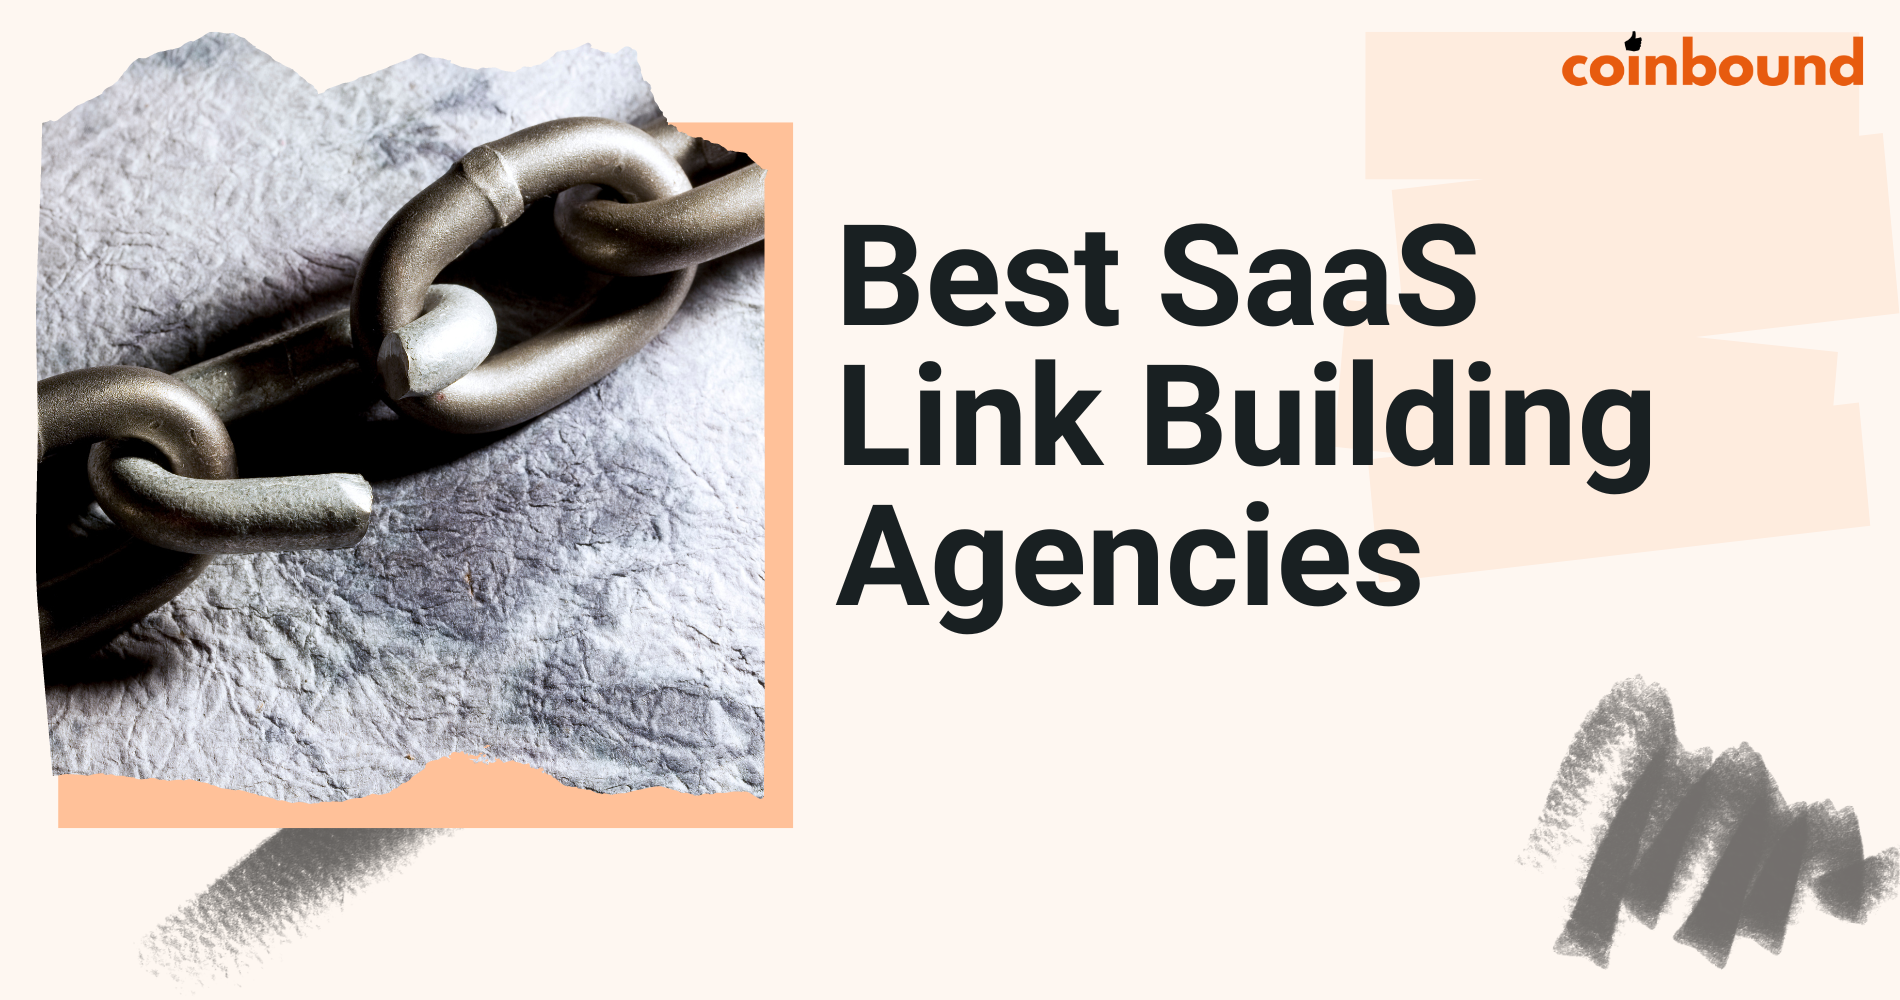 SaaS link building companies